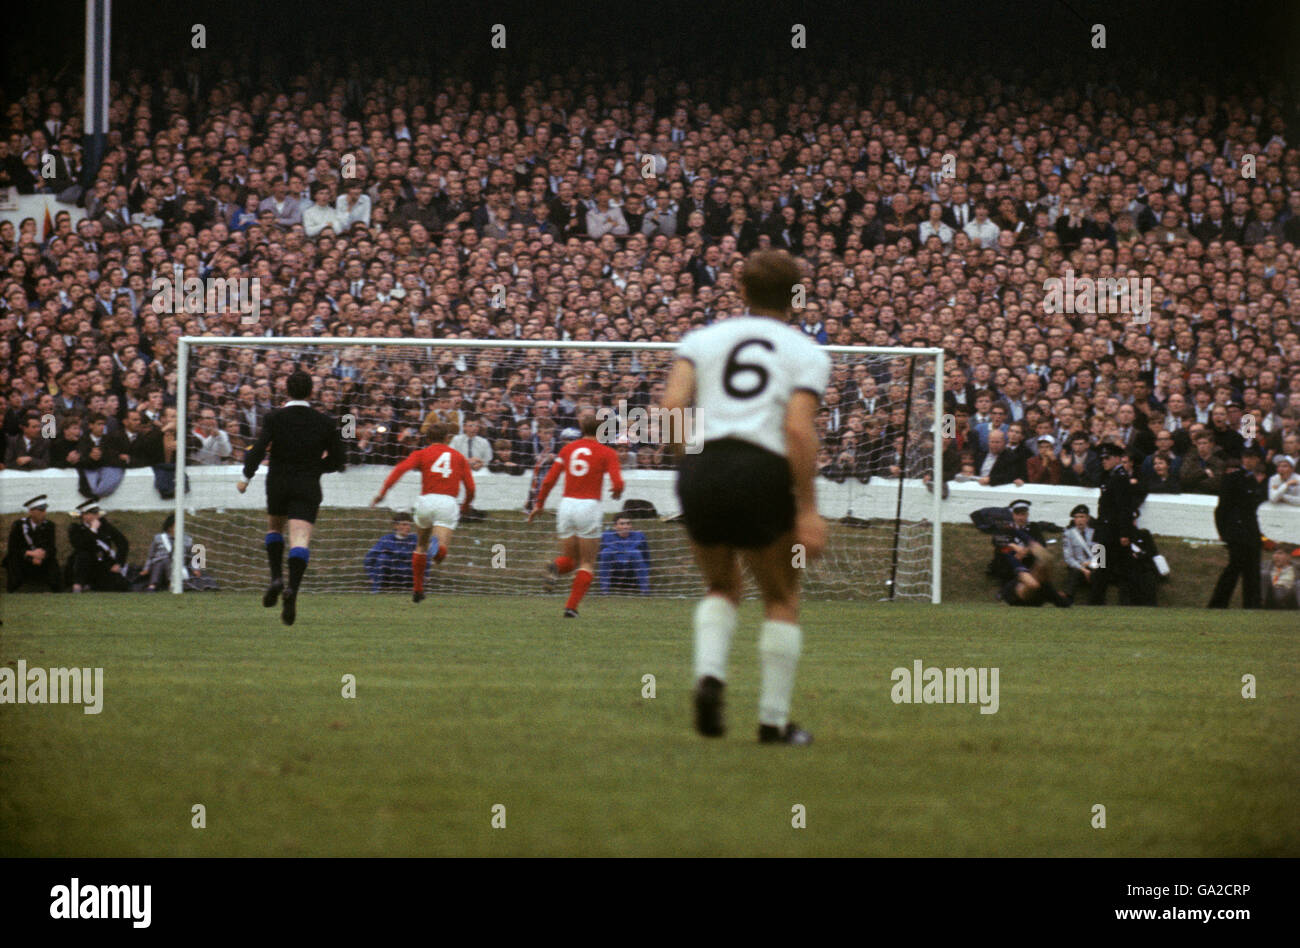 Calcio - Coppa del mondo Inghilterra 1966 - Semifinale - Germania Ovest / URSS - Goodison Park Liverpool. Weber della Germania occidentale guarda come Ponomareu (4) e Shesternev (6) dell'URSS si dirigono verso il traguardo Foto Stock